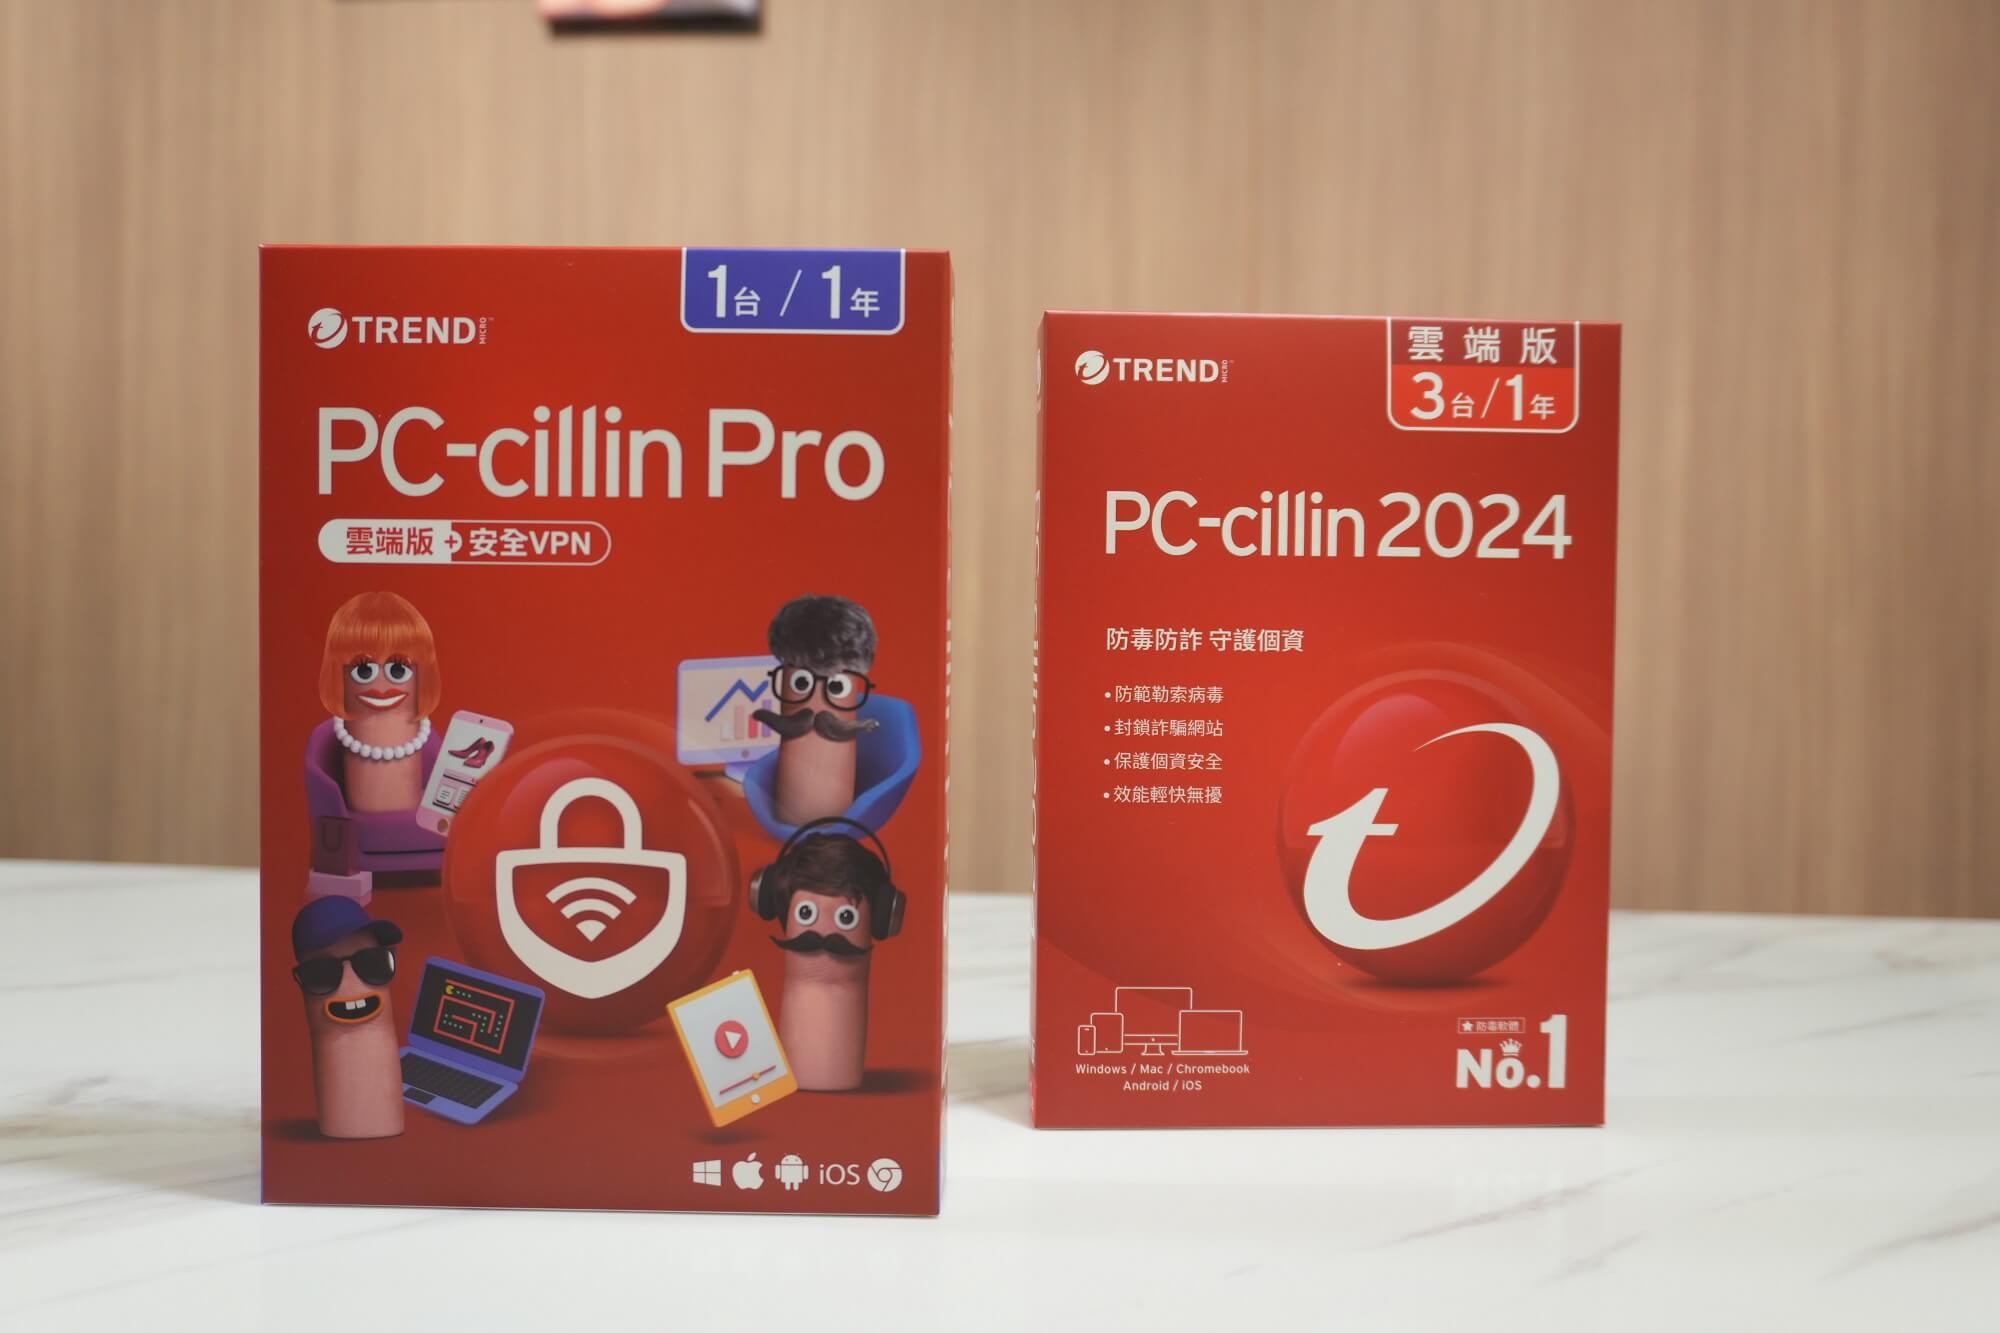 PC-cillin 2024